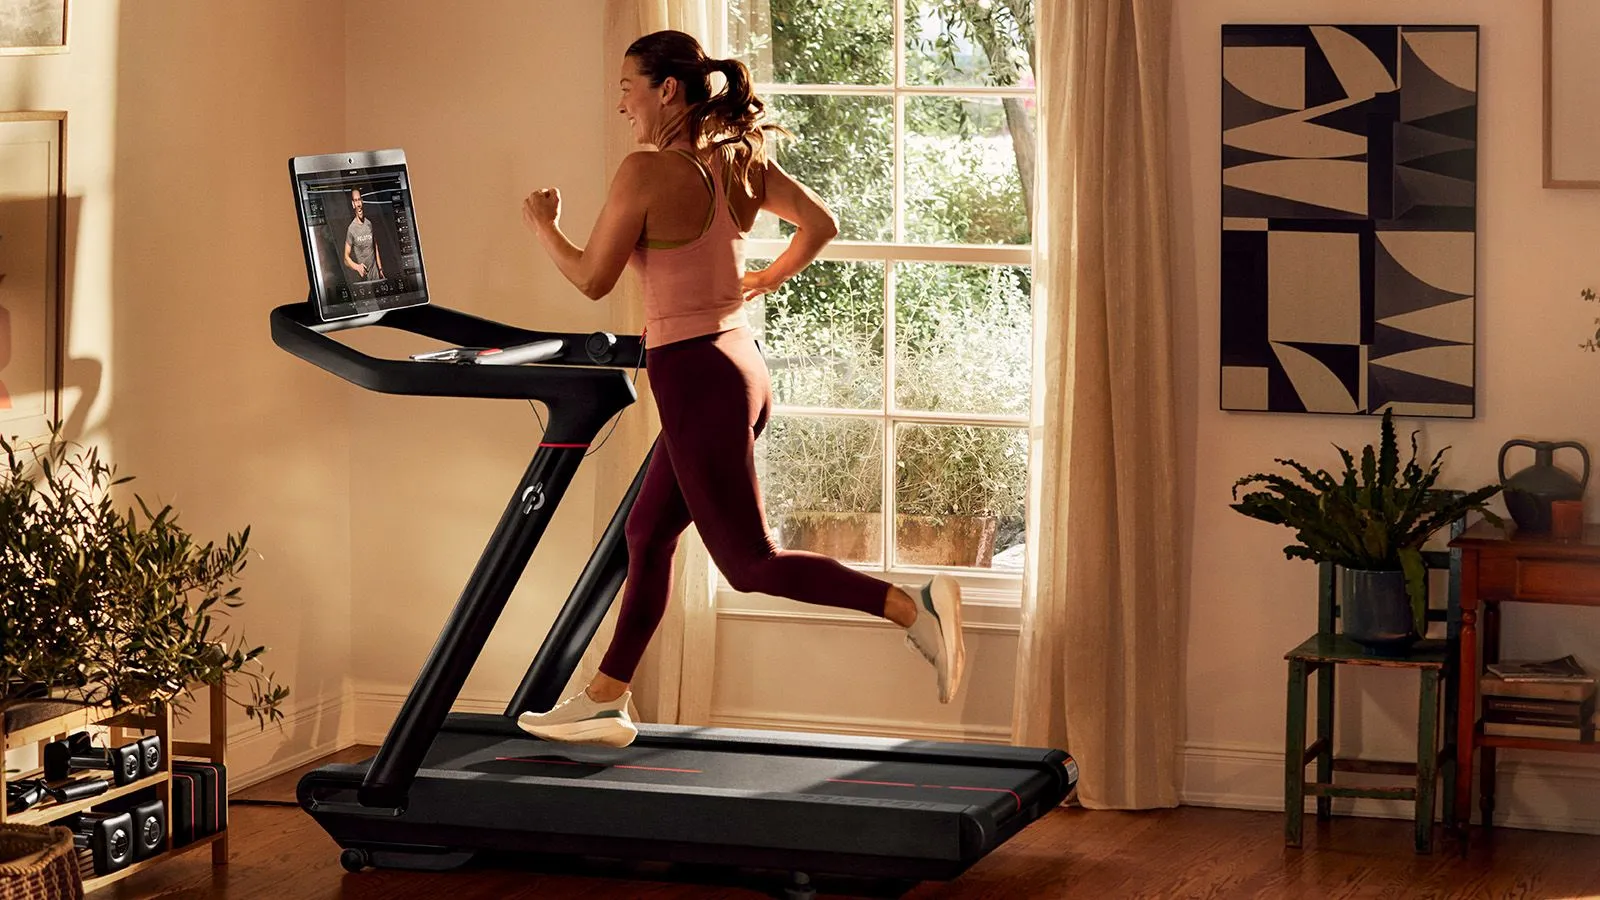 How Many Amps Does A Peloton Treadmill Use?